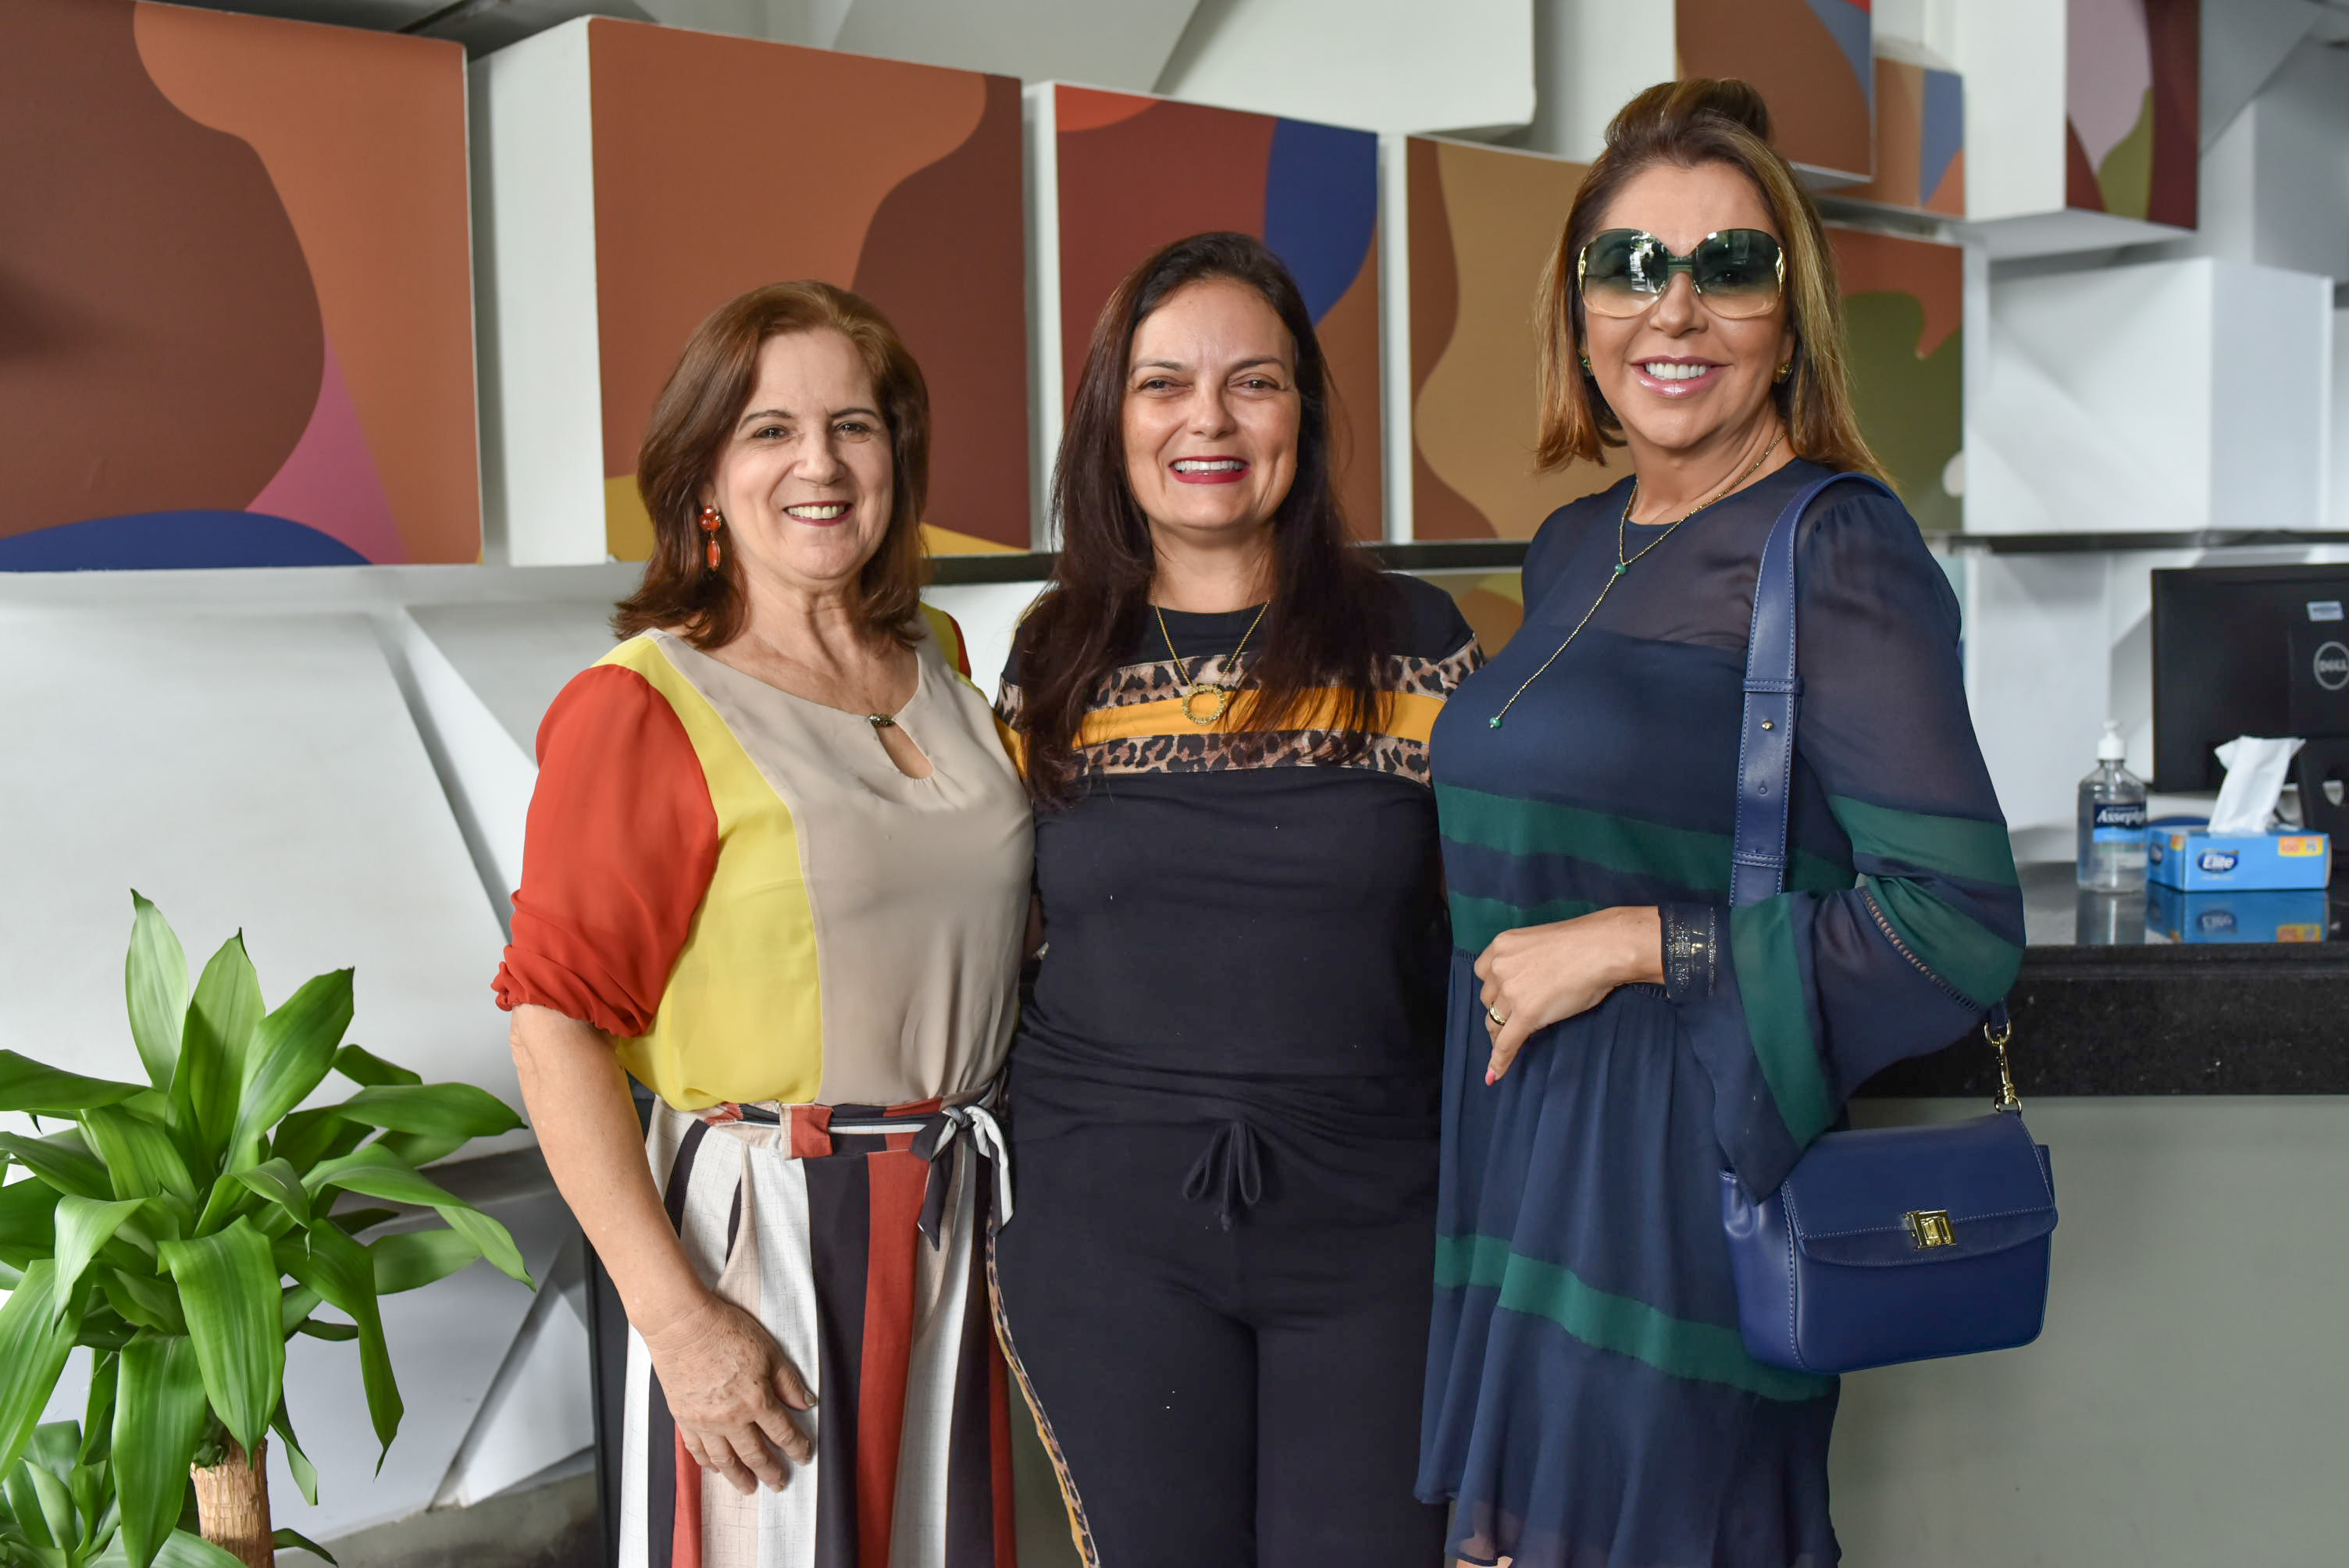 Roda de Conversa da Rede Gazeta 2020 - Dia Internacional da Mulher: Toninha Denadai, Hellen DalCol e Raigna Vasconcellos